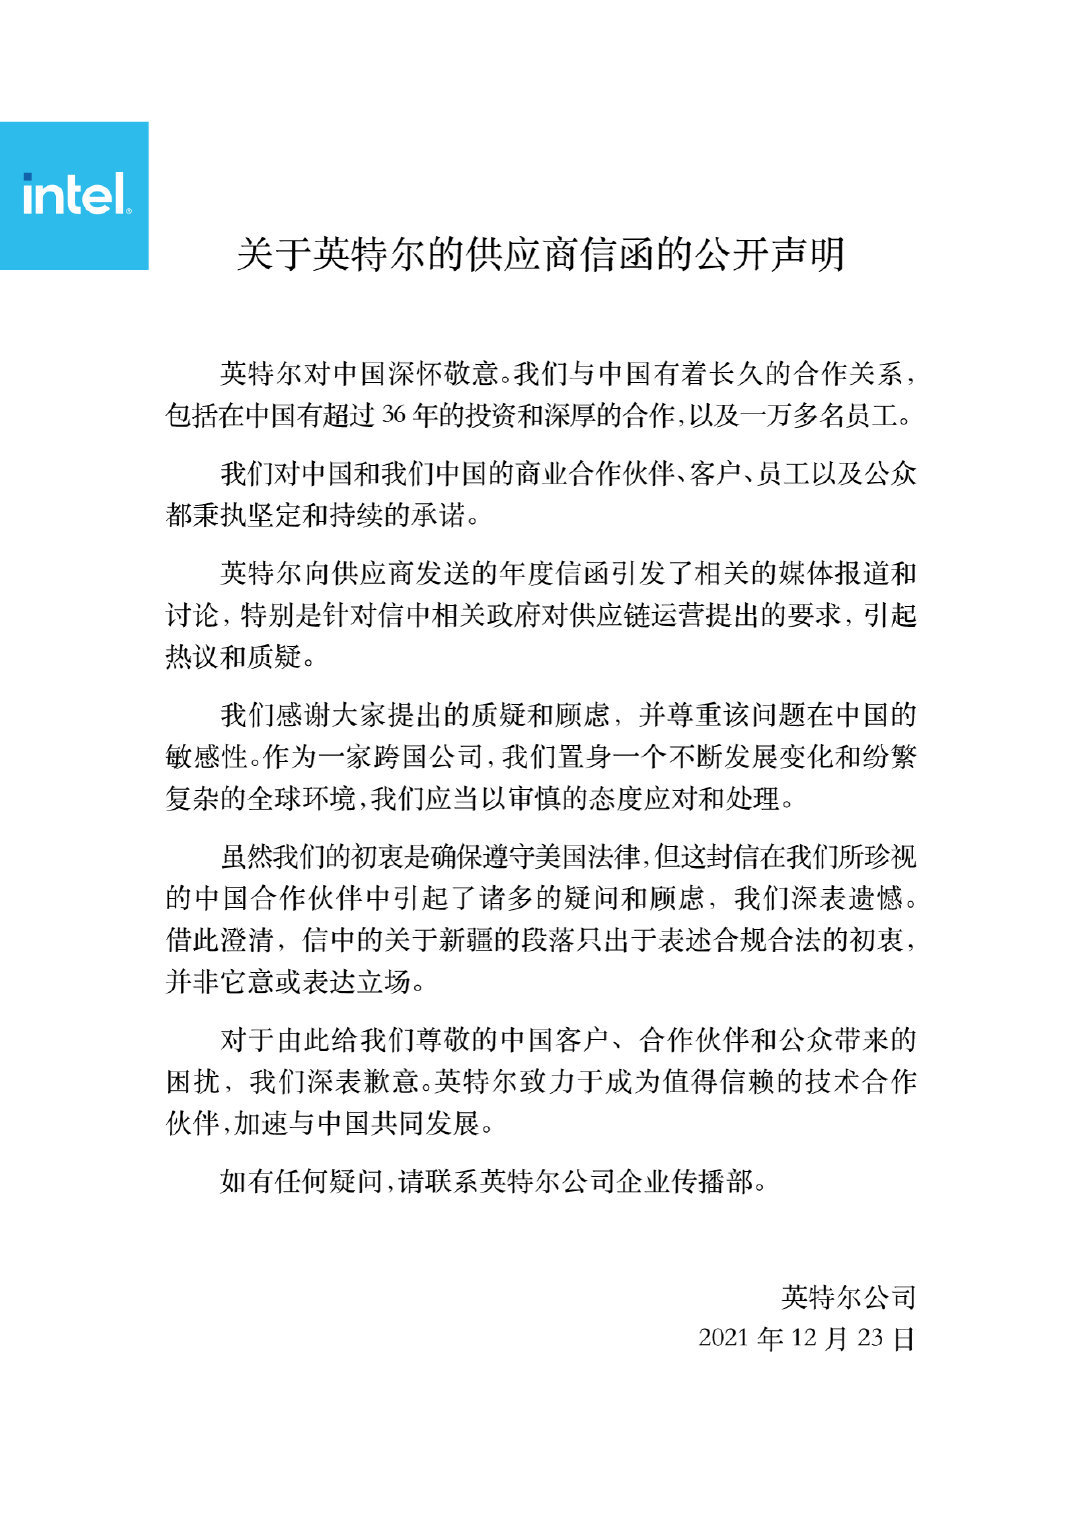 英特尔回应“涉疆信件”，称“对中国深怀敬意”，对信件引发顾虑“深表遗憾”